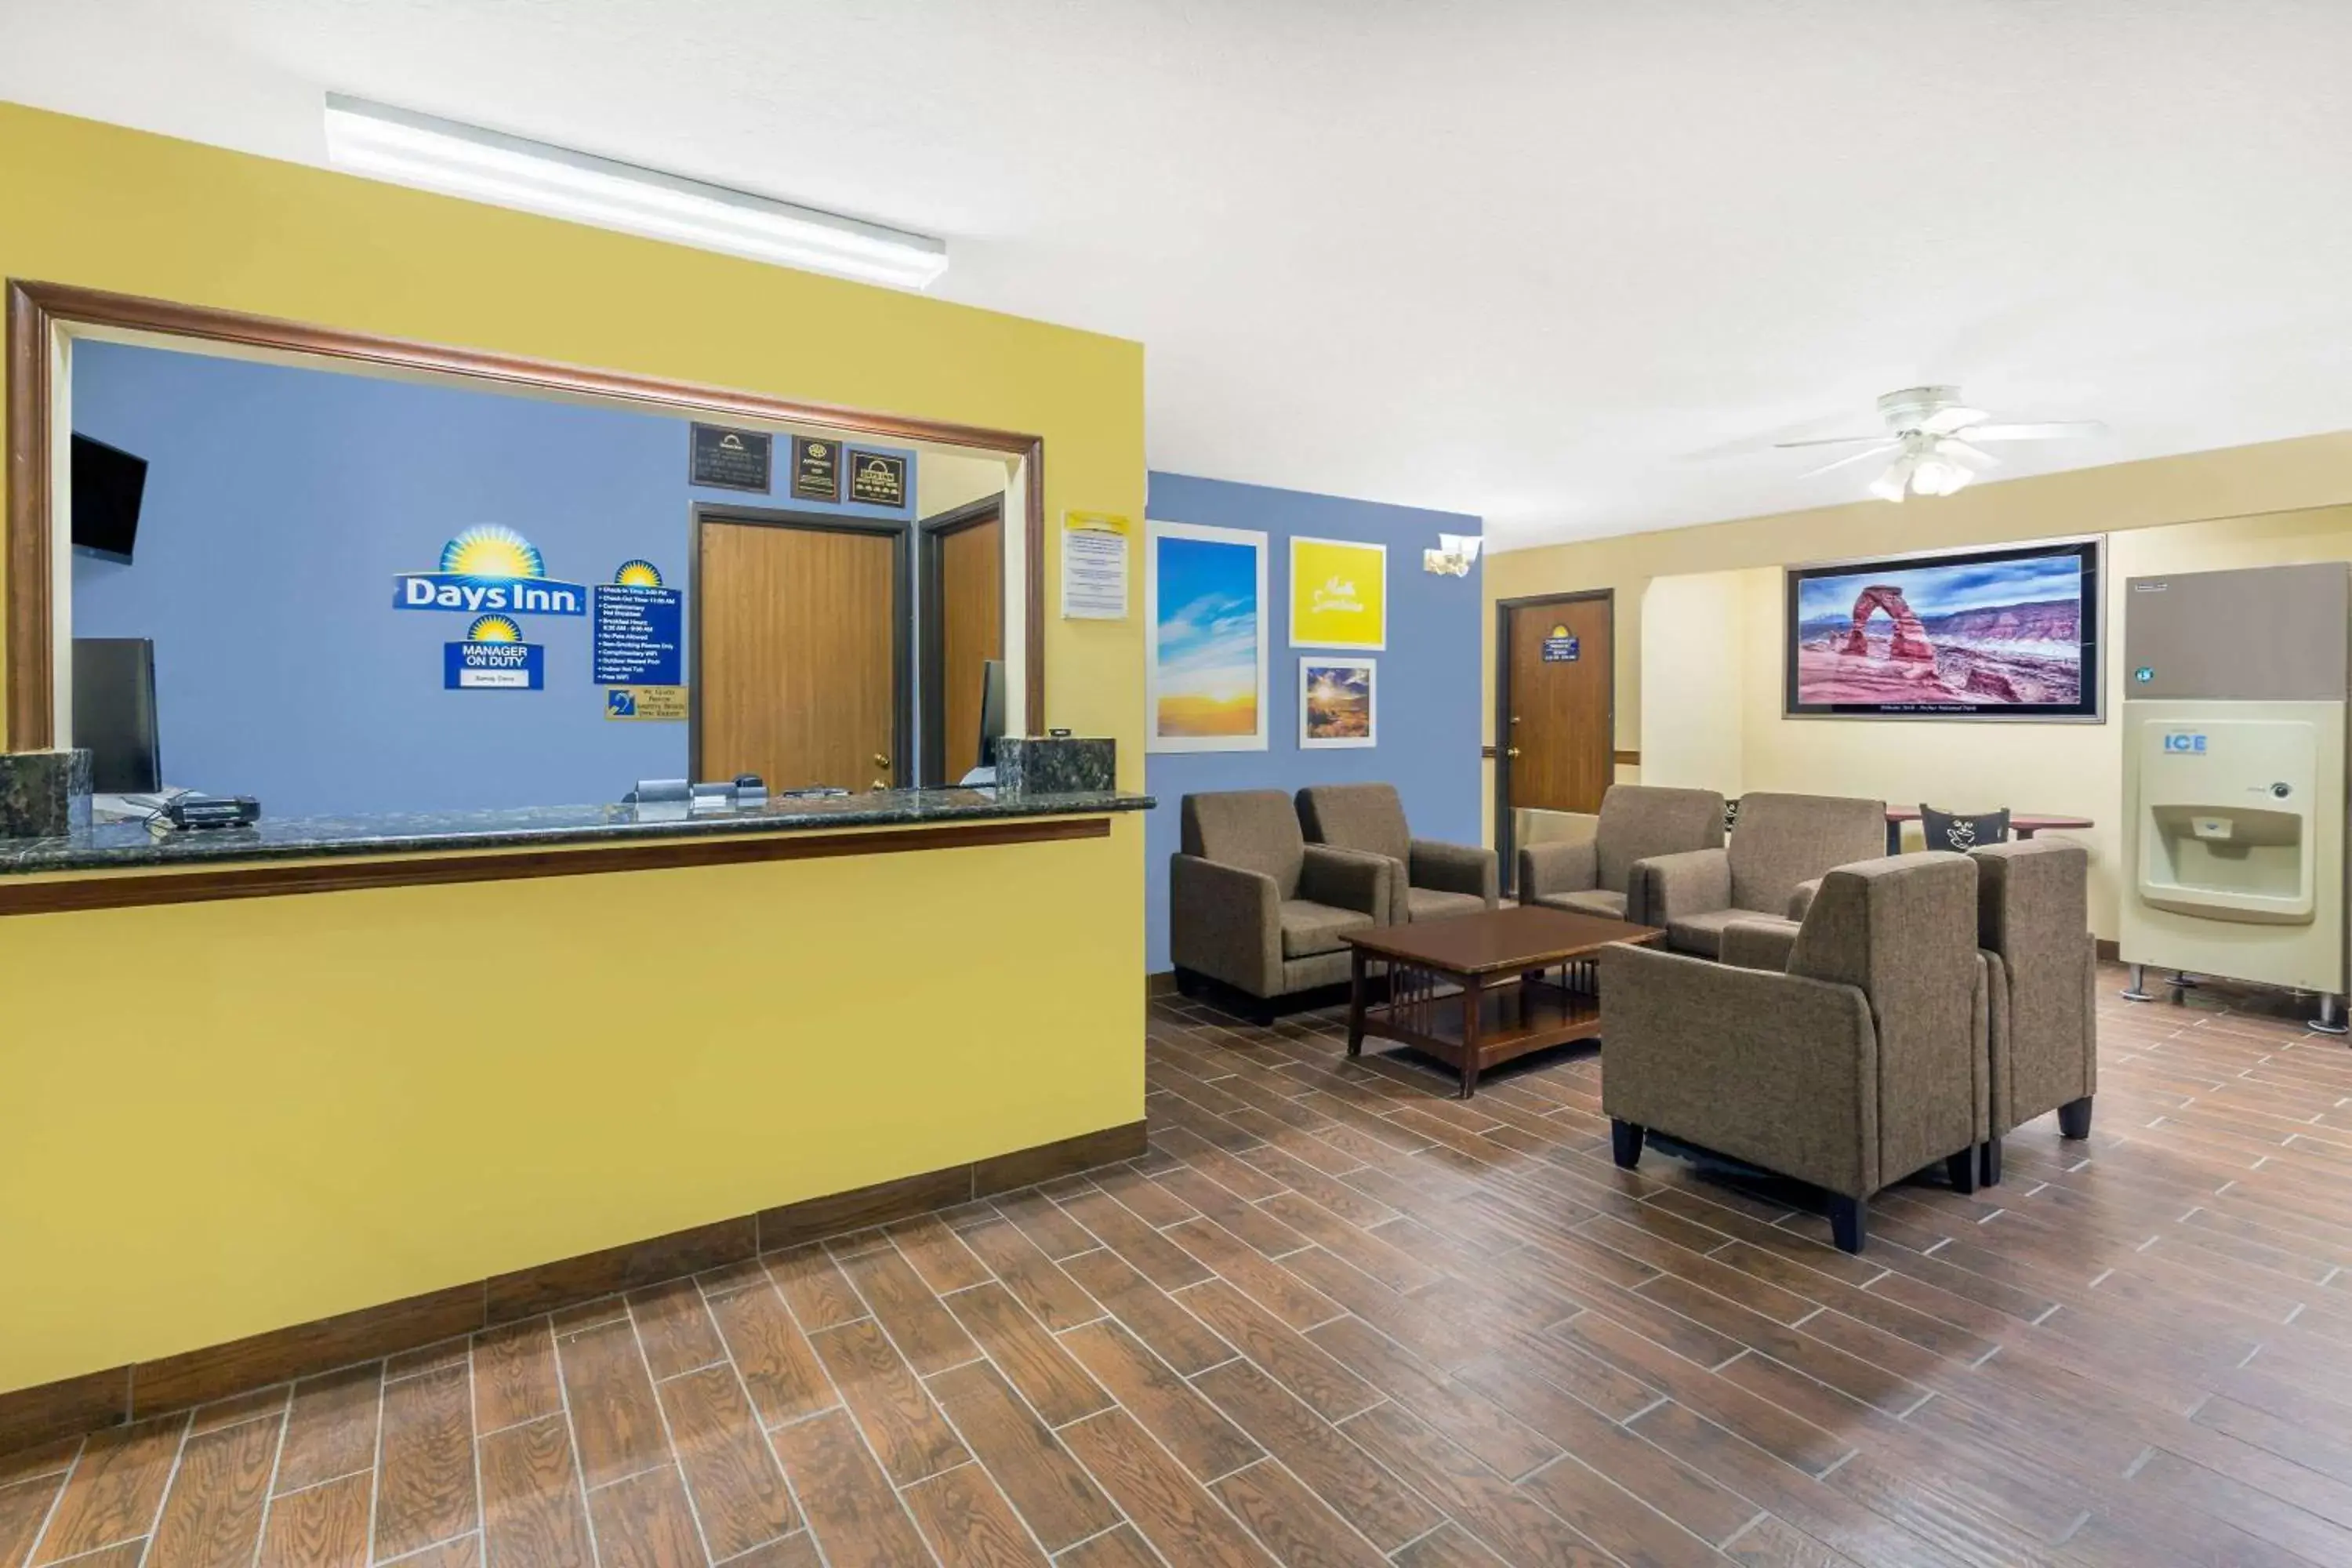 Lobby or reception, Lobby/Reception in Days Inn by Wyndham Moab